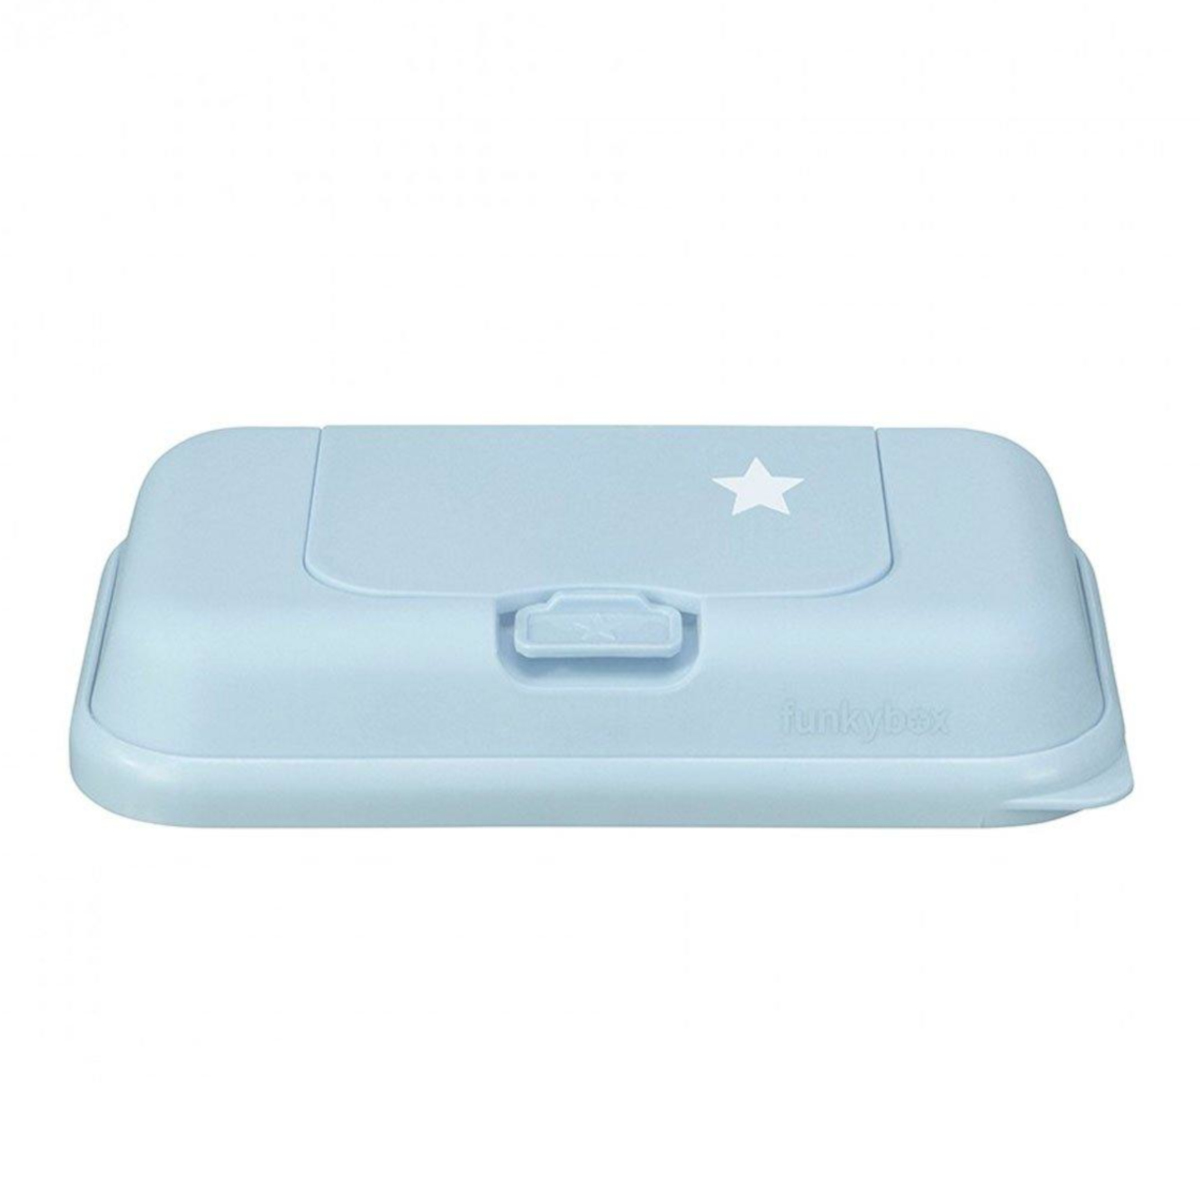 Funkybox ToGo förvaring till våtservetter Pale Blue Star, ask, box, låda i ljusblått